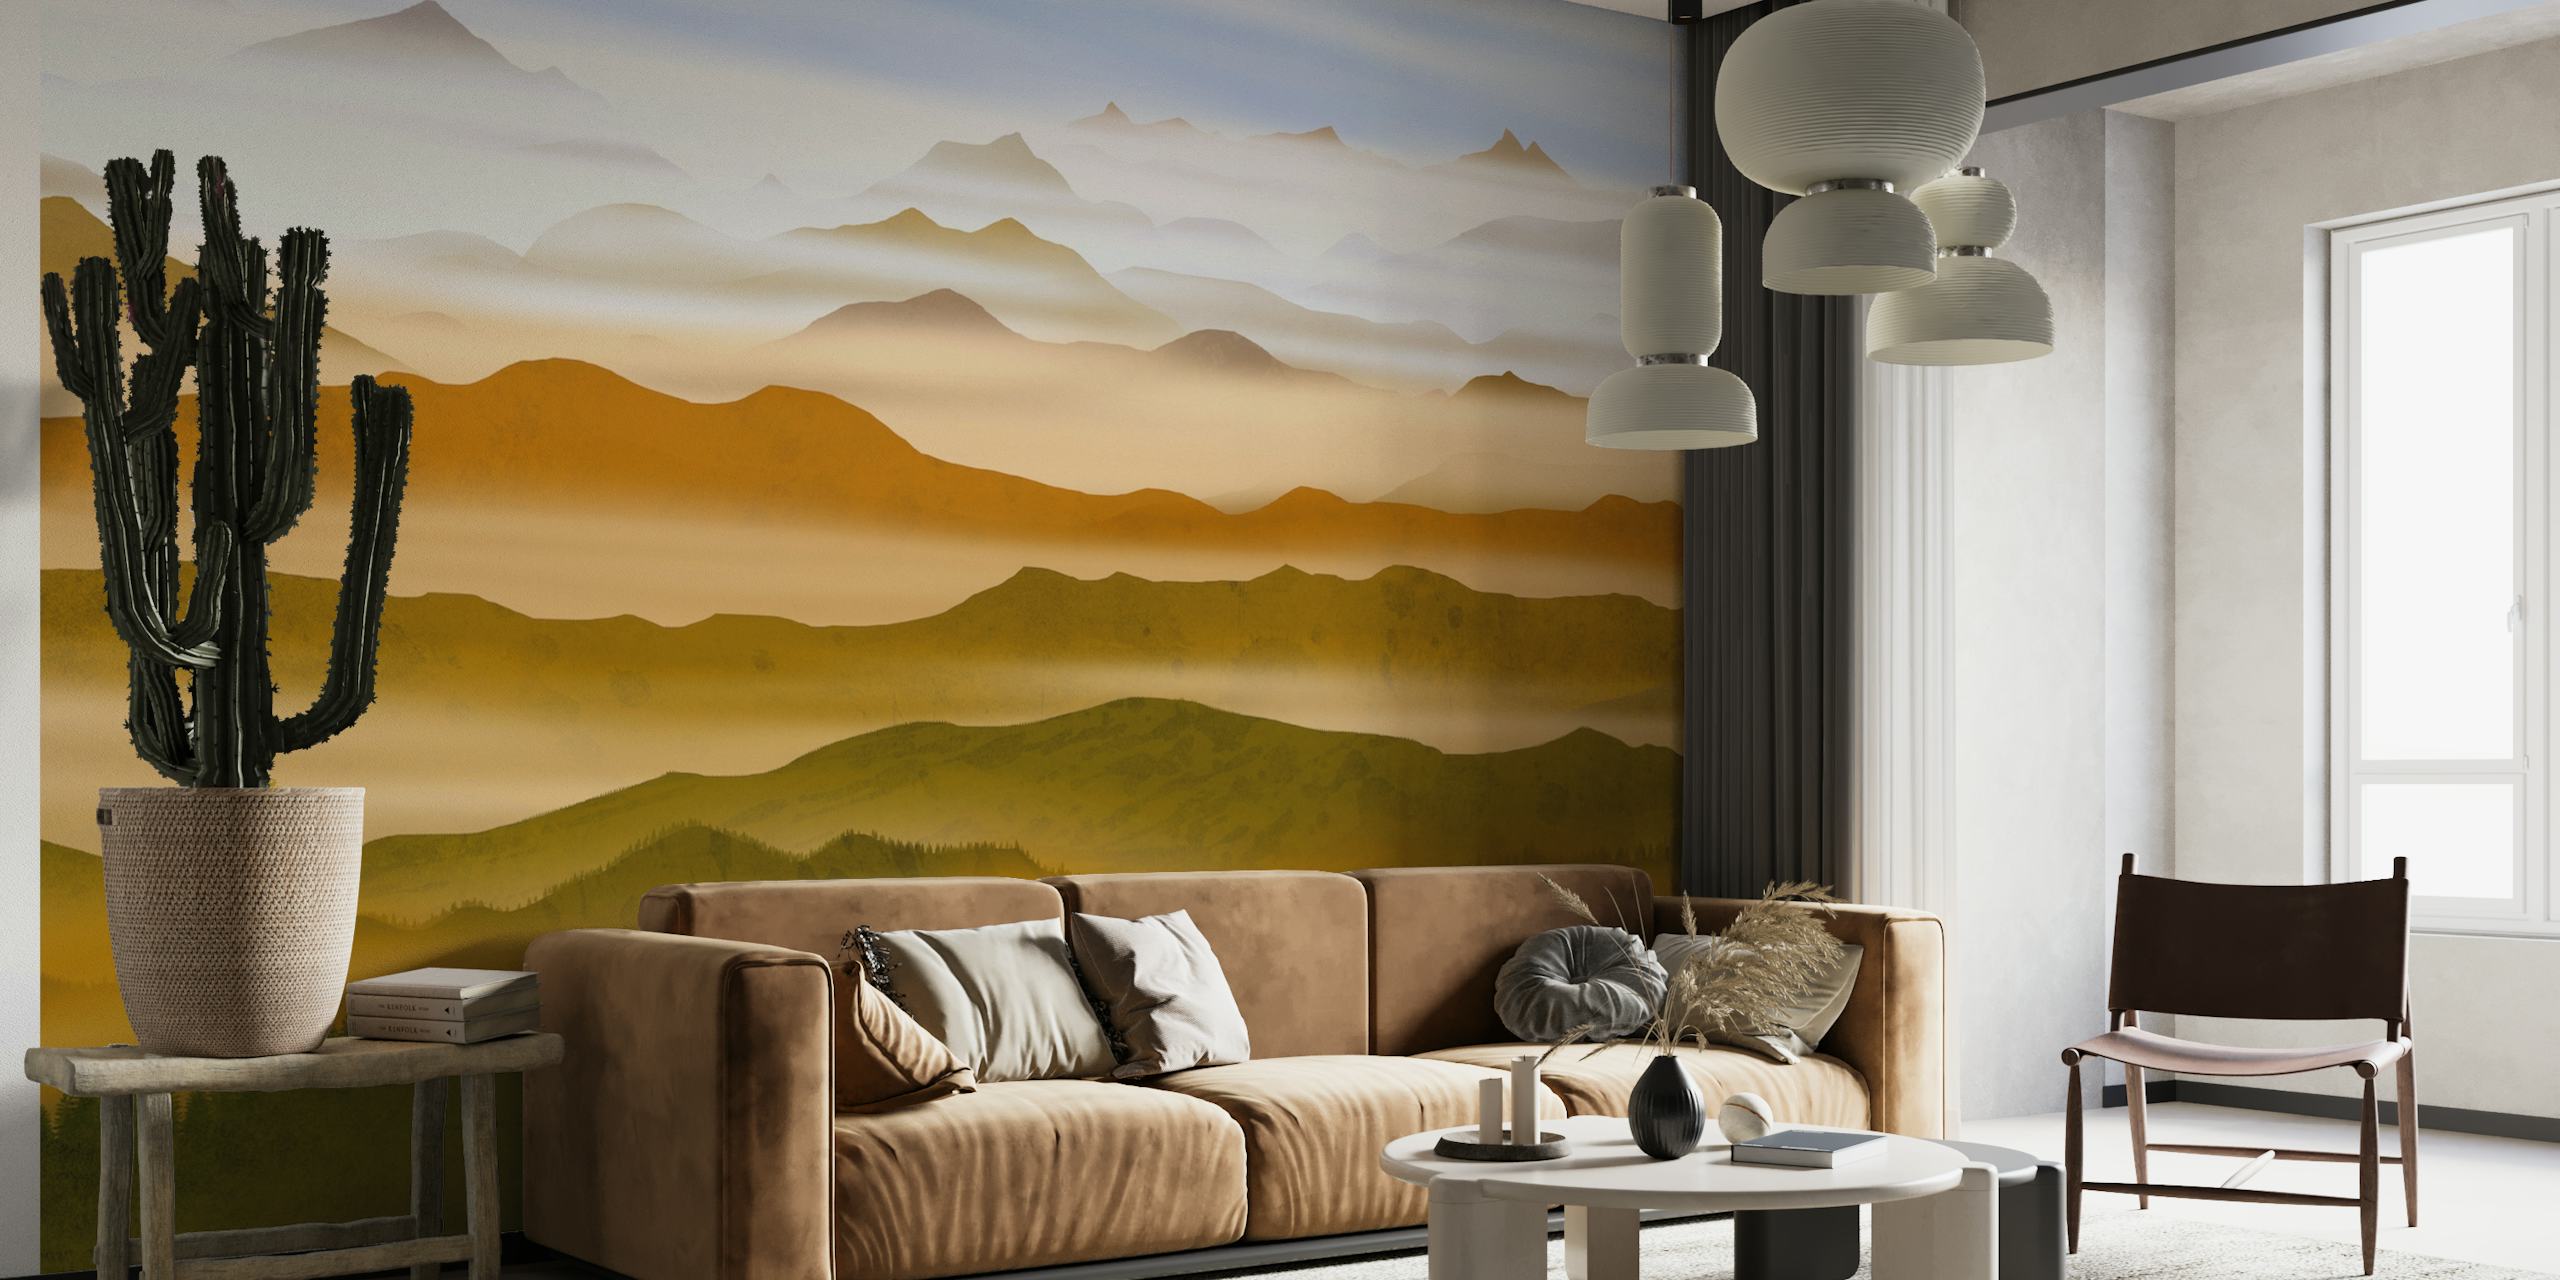 Mural de Pearl Valleys con colinas en capas y suaves tonos tierra